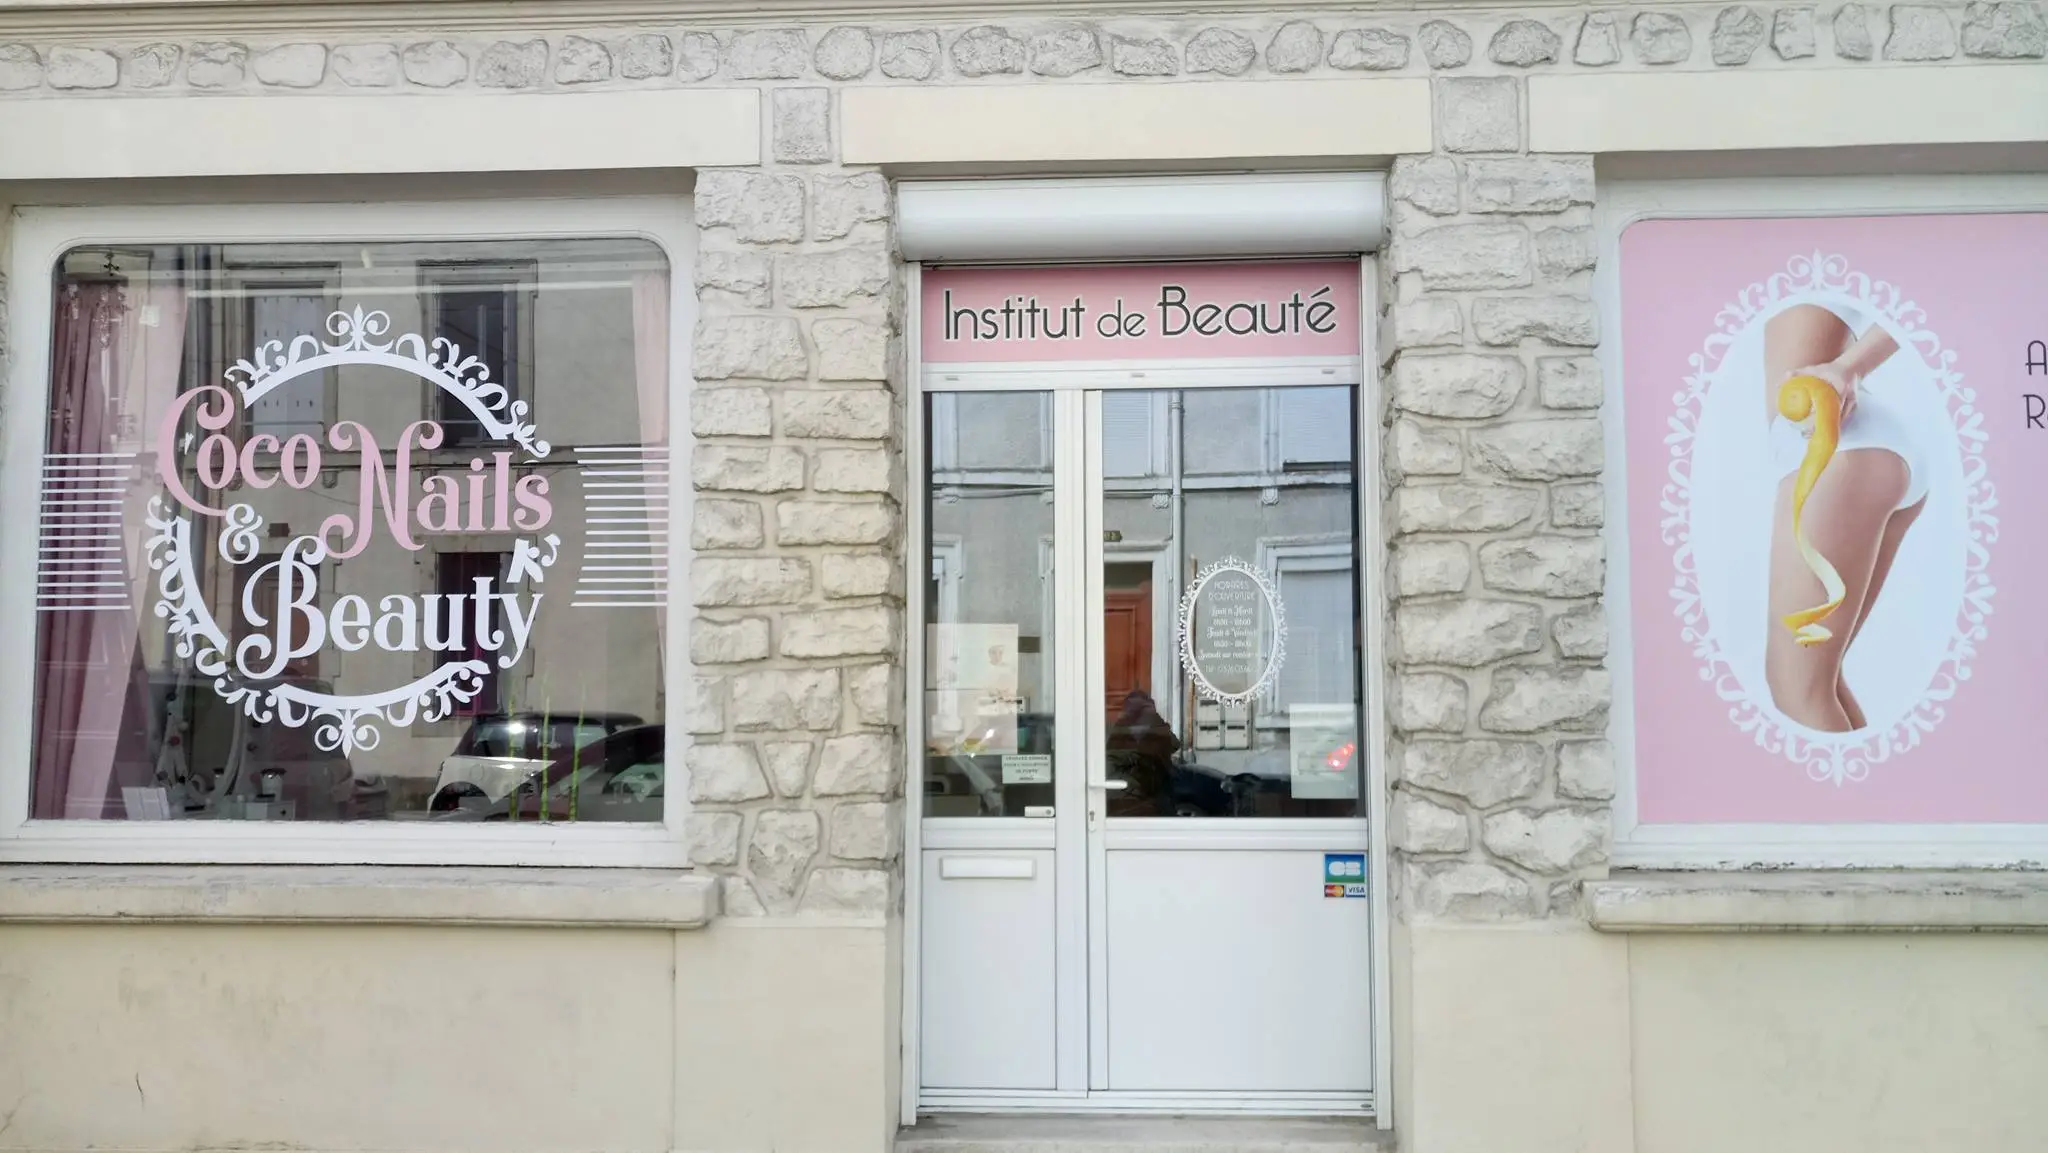 institut de beauté coconails-beauty à Reims